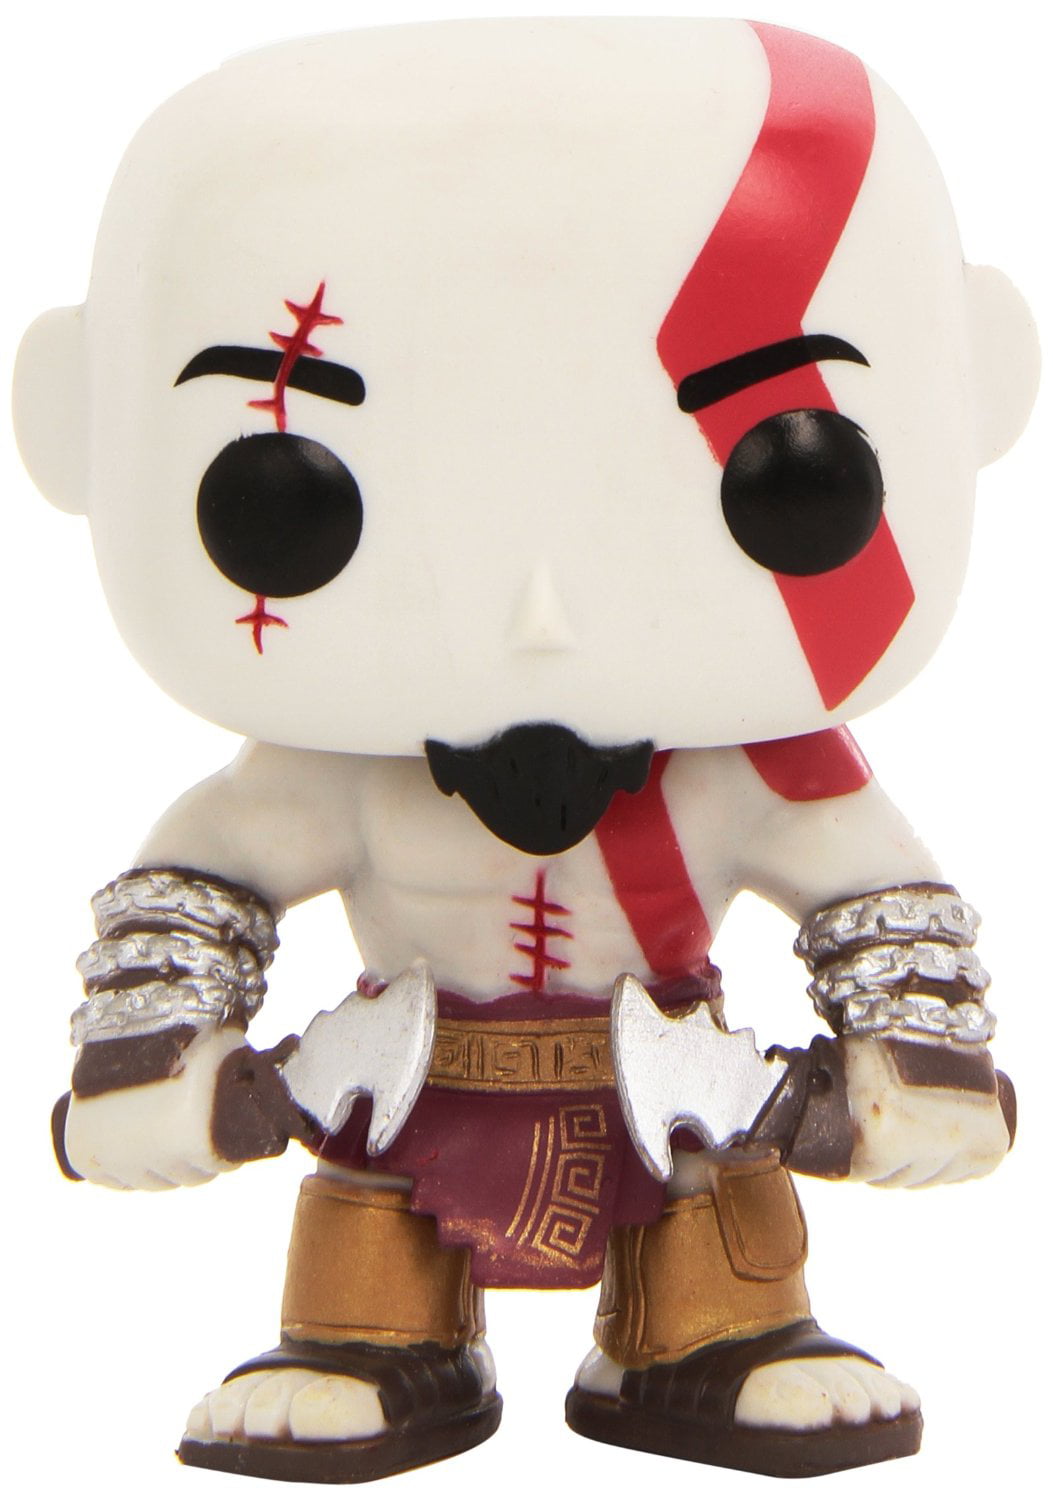 kratos pop figure